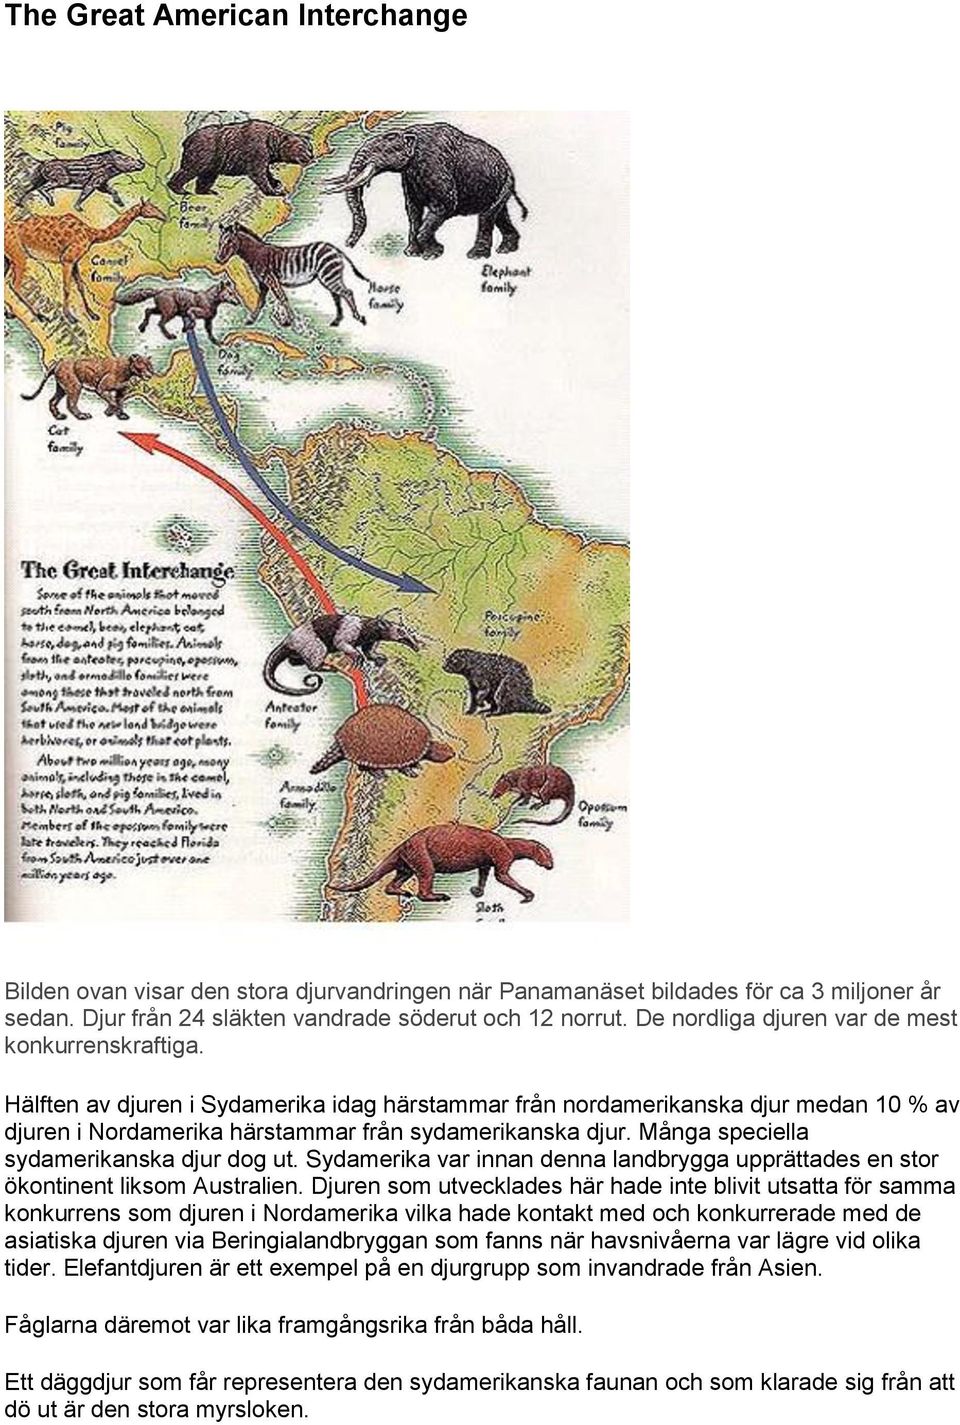 Många speciella sydamerikanska djur dog ut. Sydamerika var innan denna landbrygga upprättades en stor ökontinent liksom Australien.